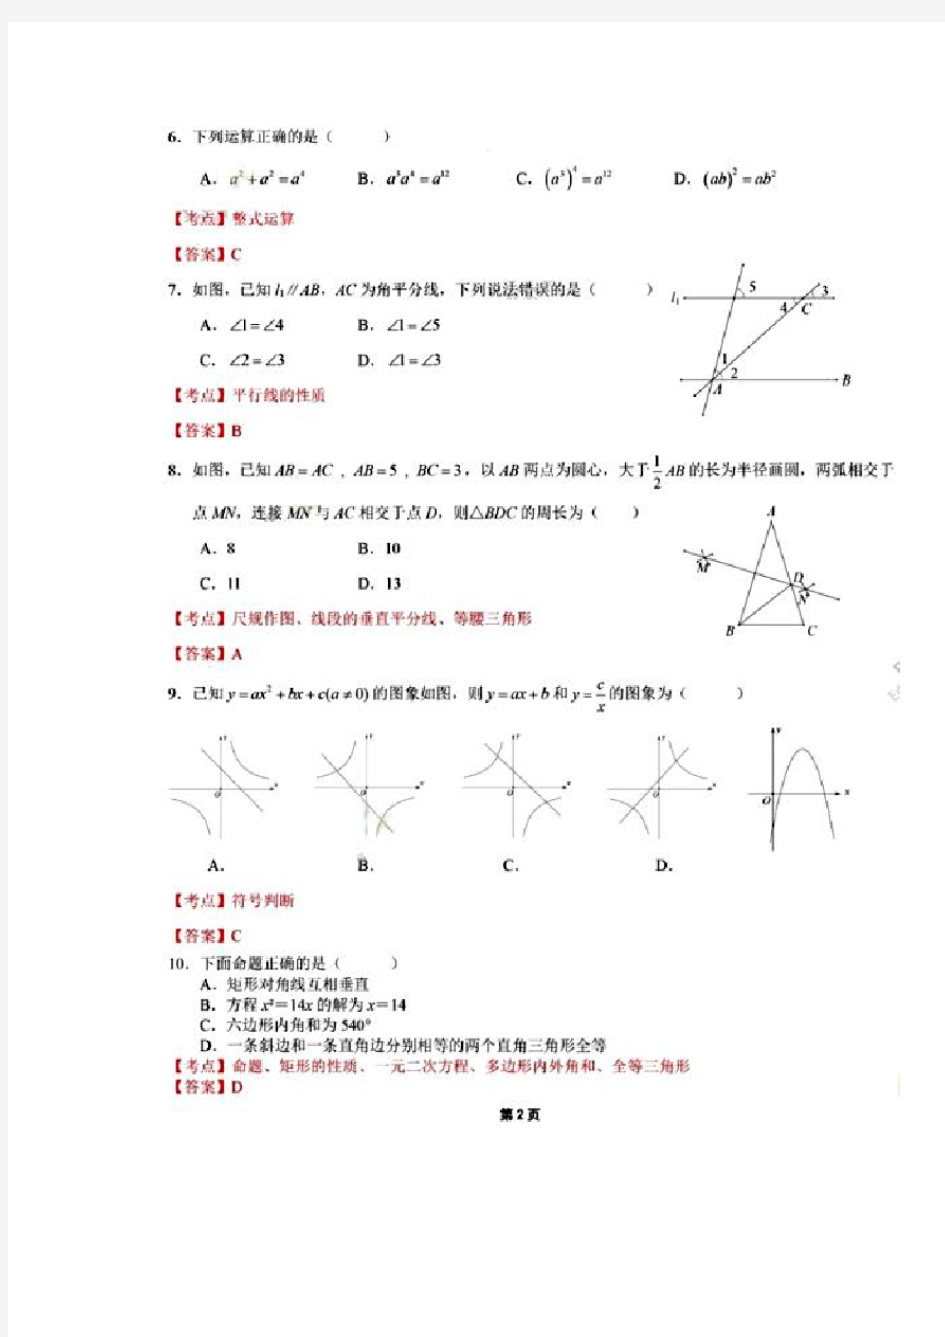 2019年深圳中考试题PDF